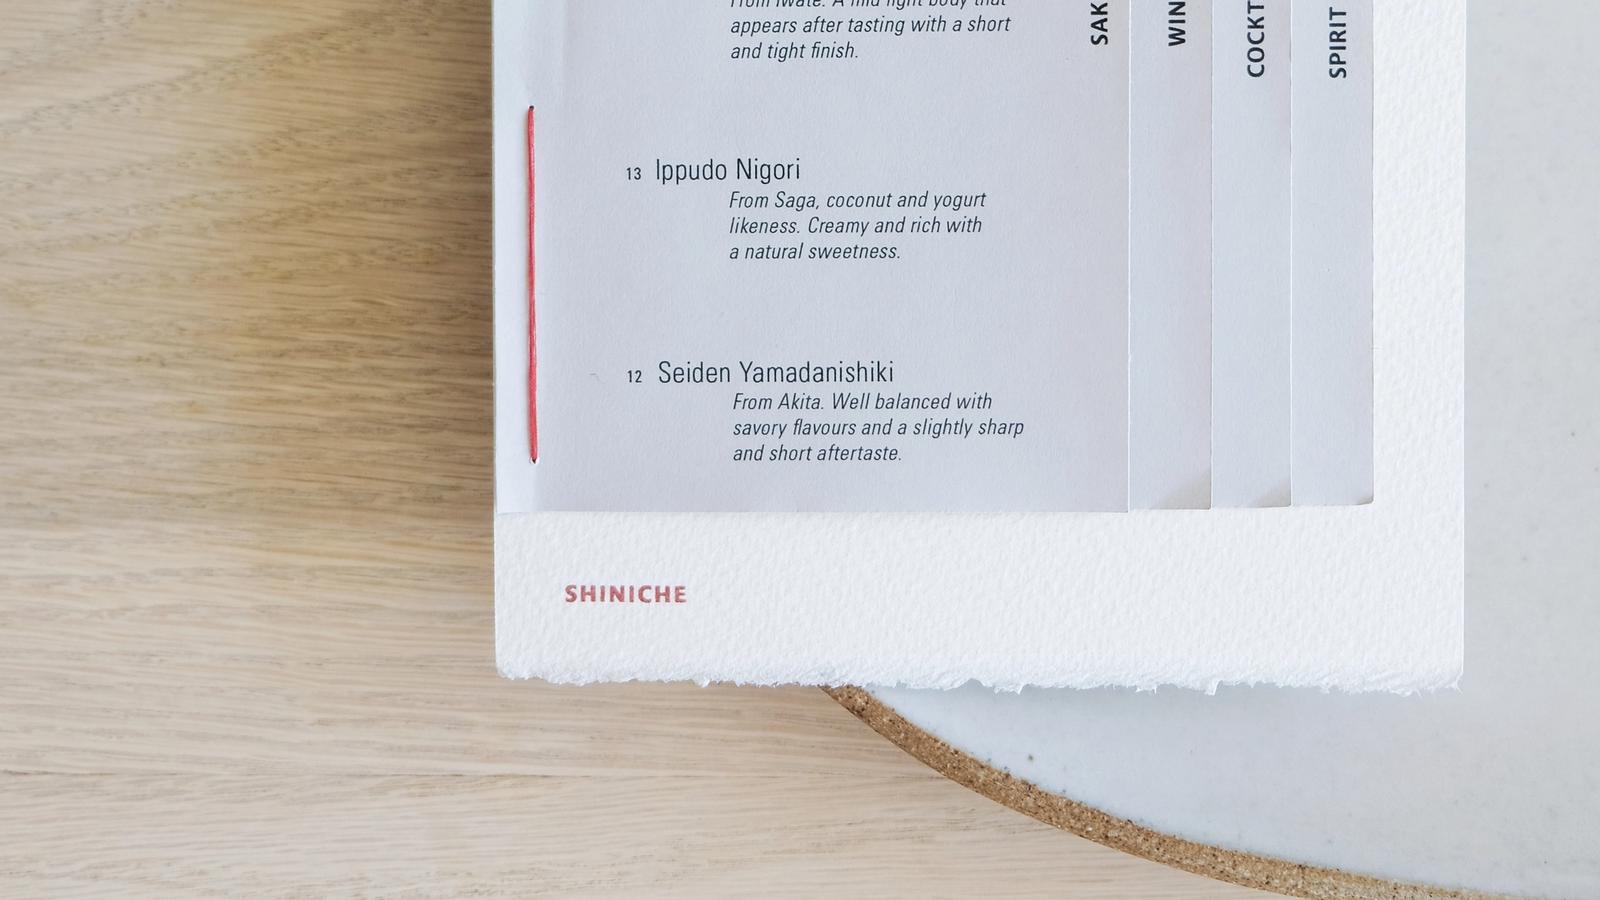 Shiniche // Contemporary Restaurant Experience Design